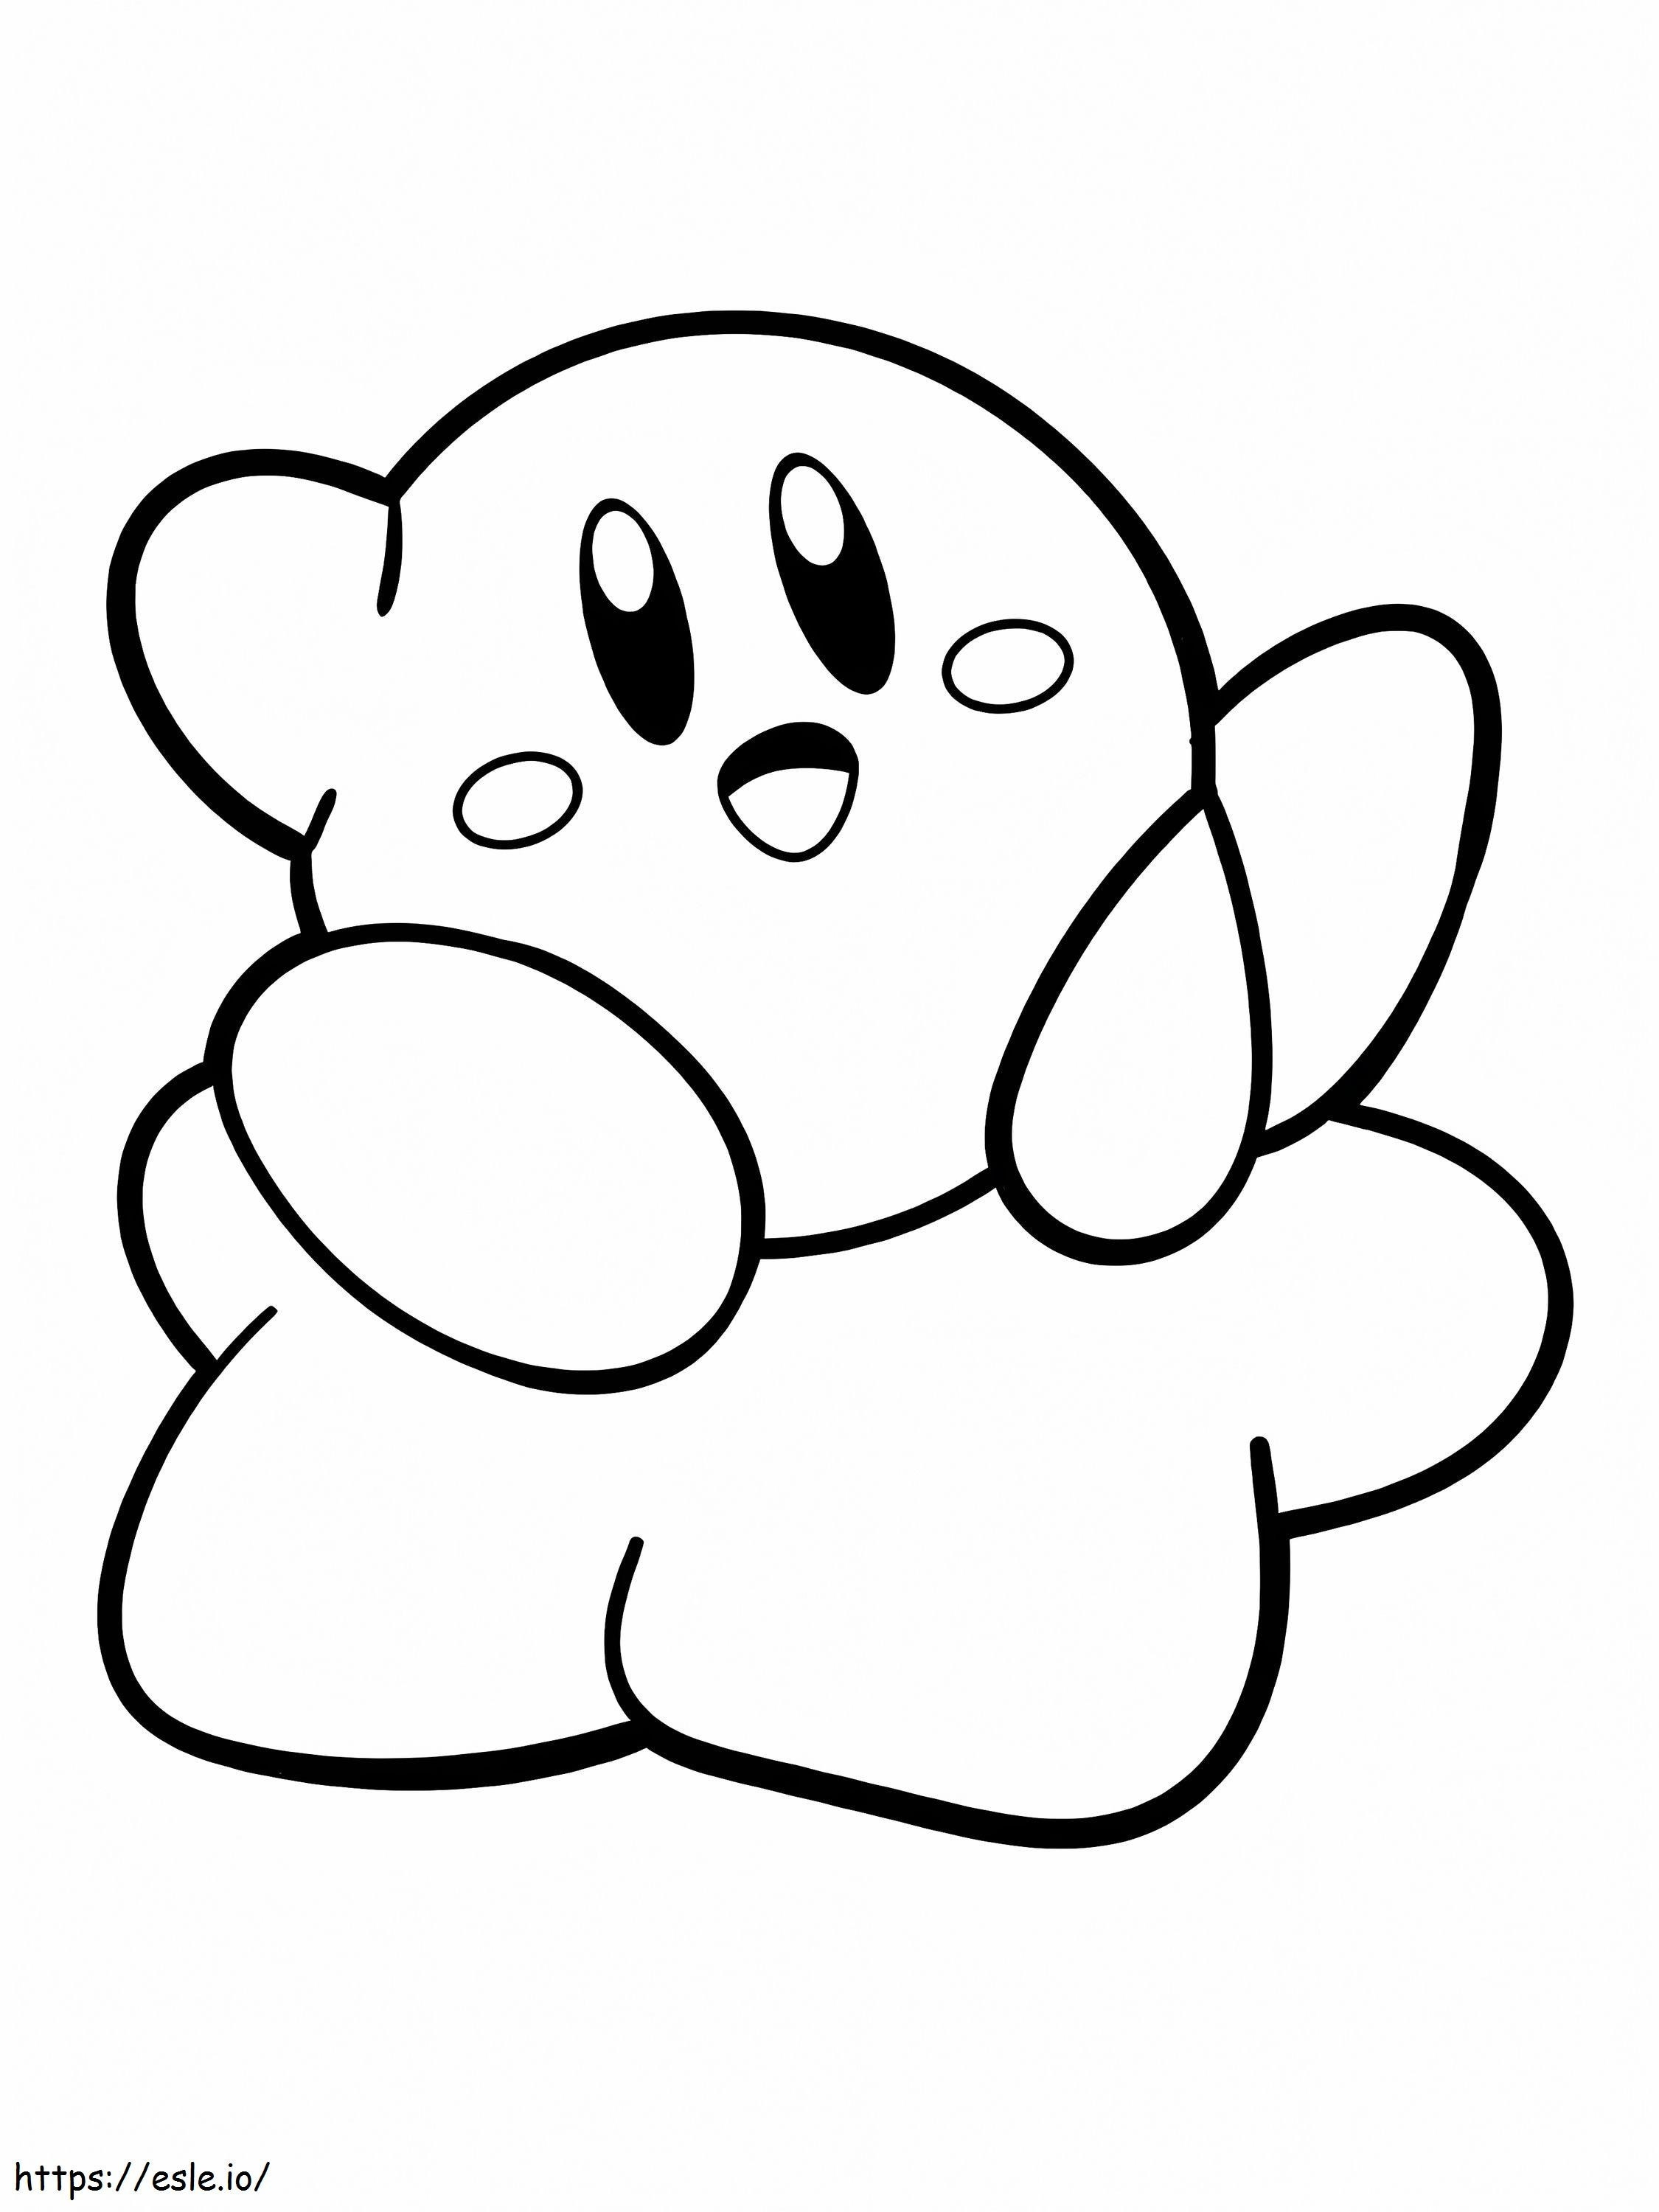 Kleiner Kirby ausmalbilder